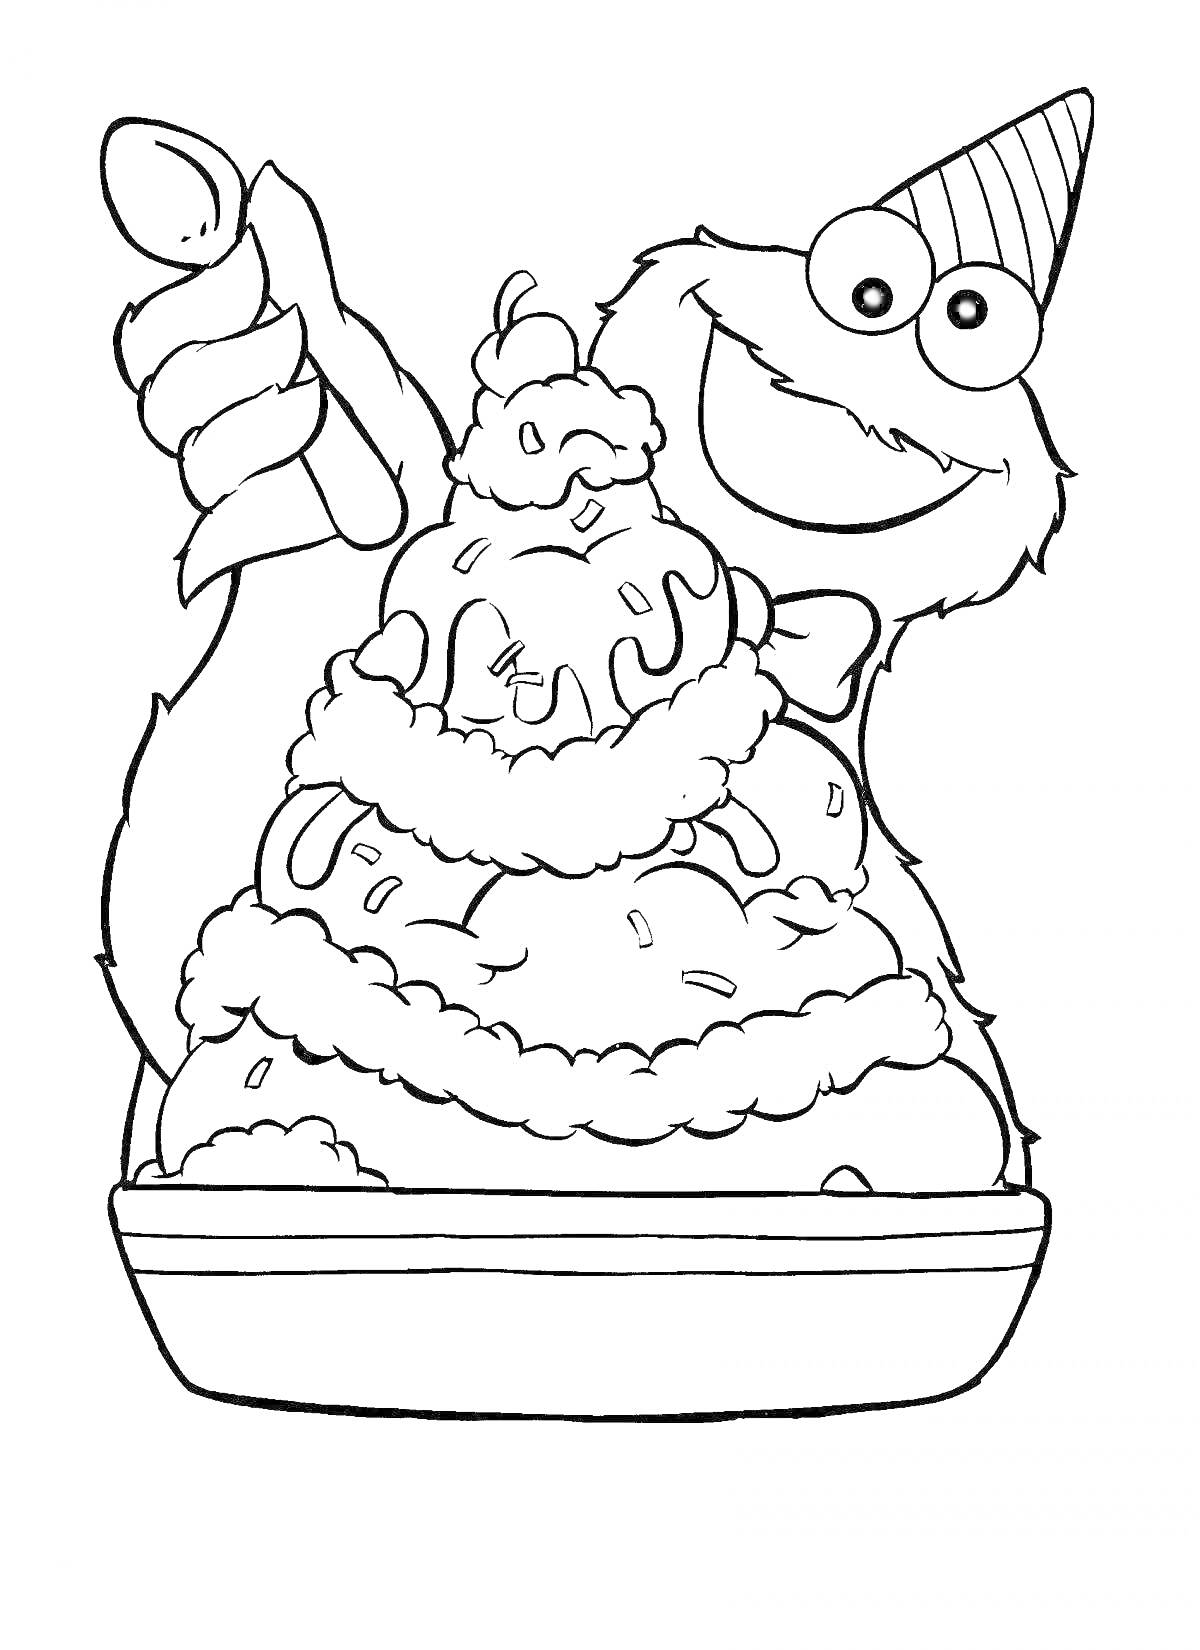 Раскраска Мороженщик с шапочкой и мороженым в вазочке